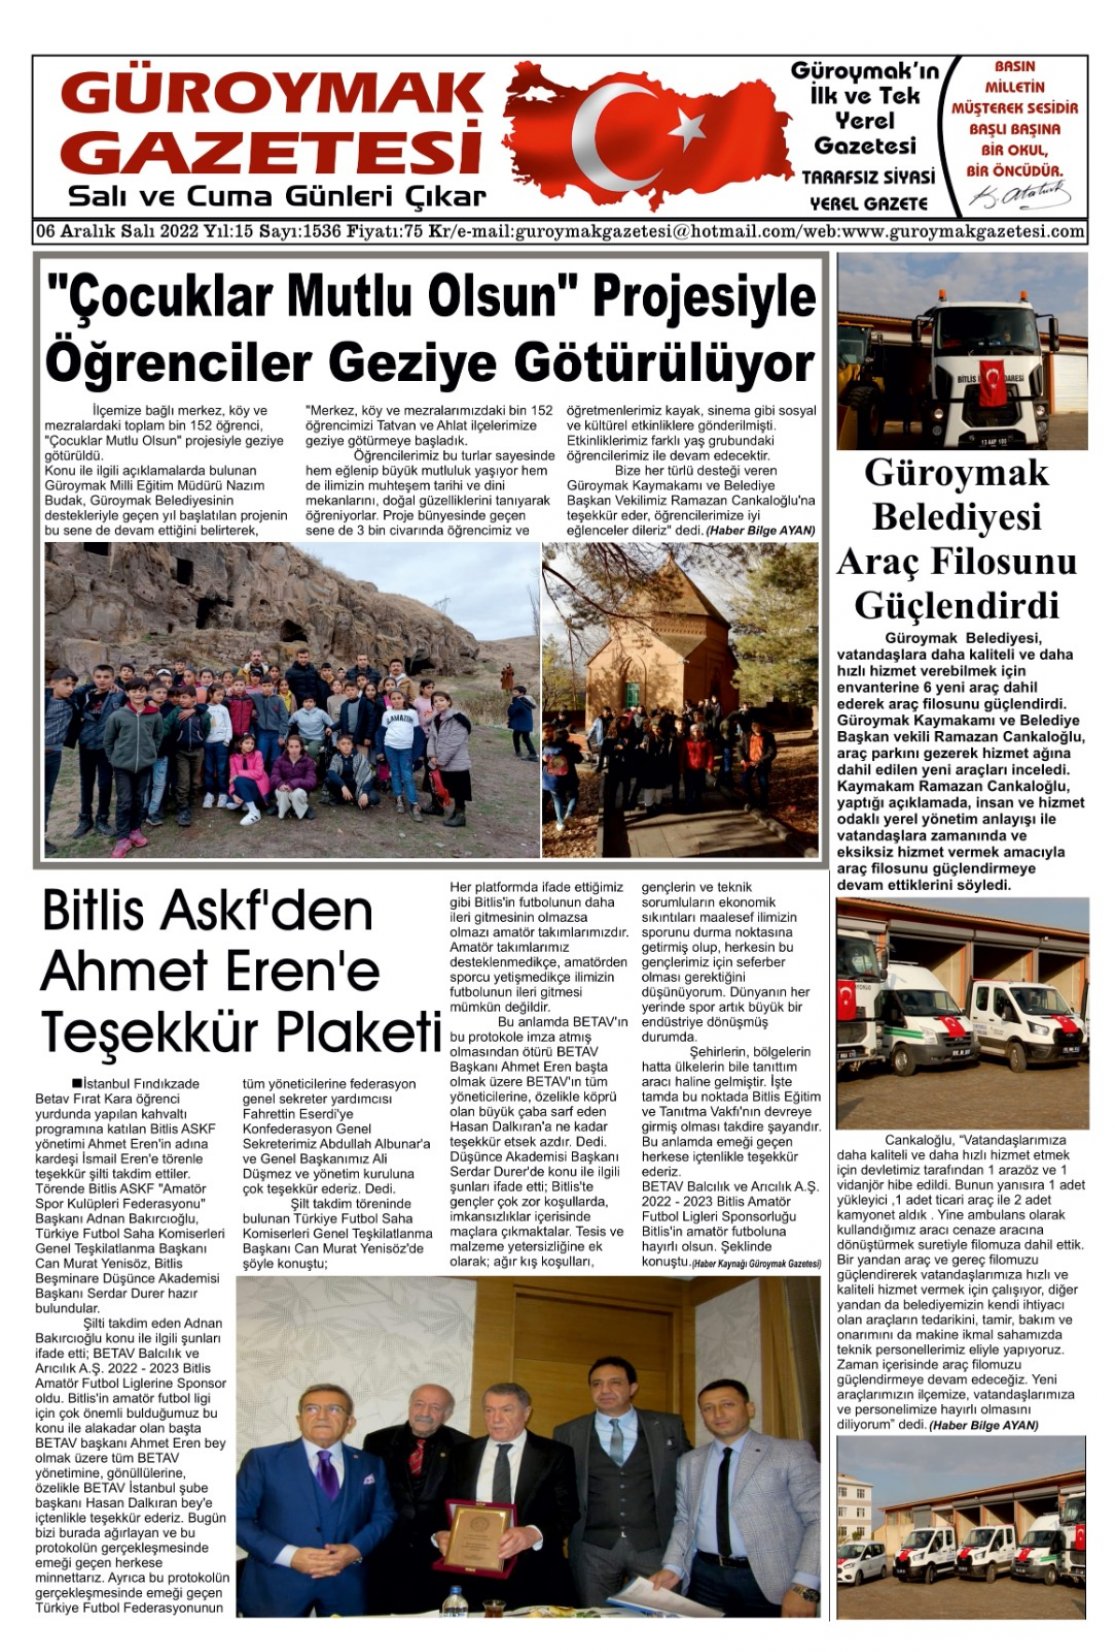 Güroymak Gazetesi IMG-20221205-WA0006.jpg Sayılı Gazete Küpürü